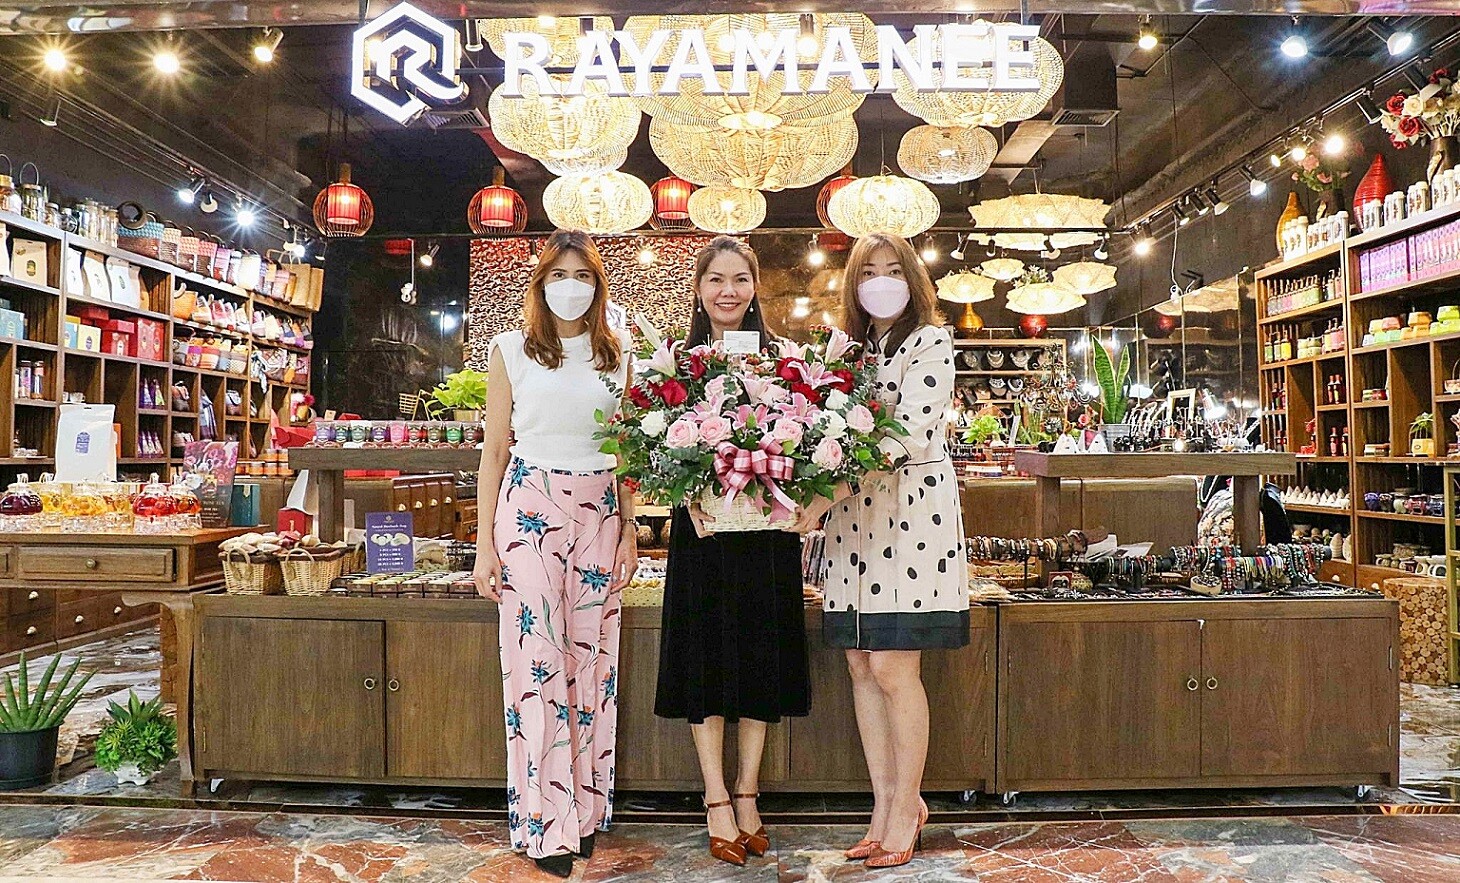 เอ็ม บี เค เซ็นเตอร์ แสดงความยินดีเปิดร้าน RAYAMANEE คอนเซปต์ใหม่ เพิ่มไลน์สินค้ารองรับดีมานด์ลูกค้าต่างชาติ